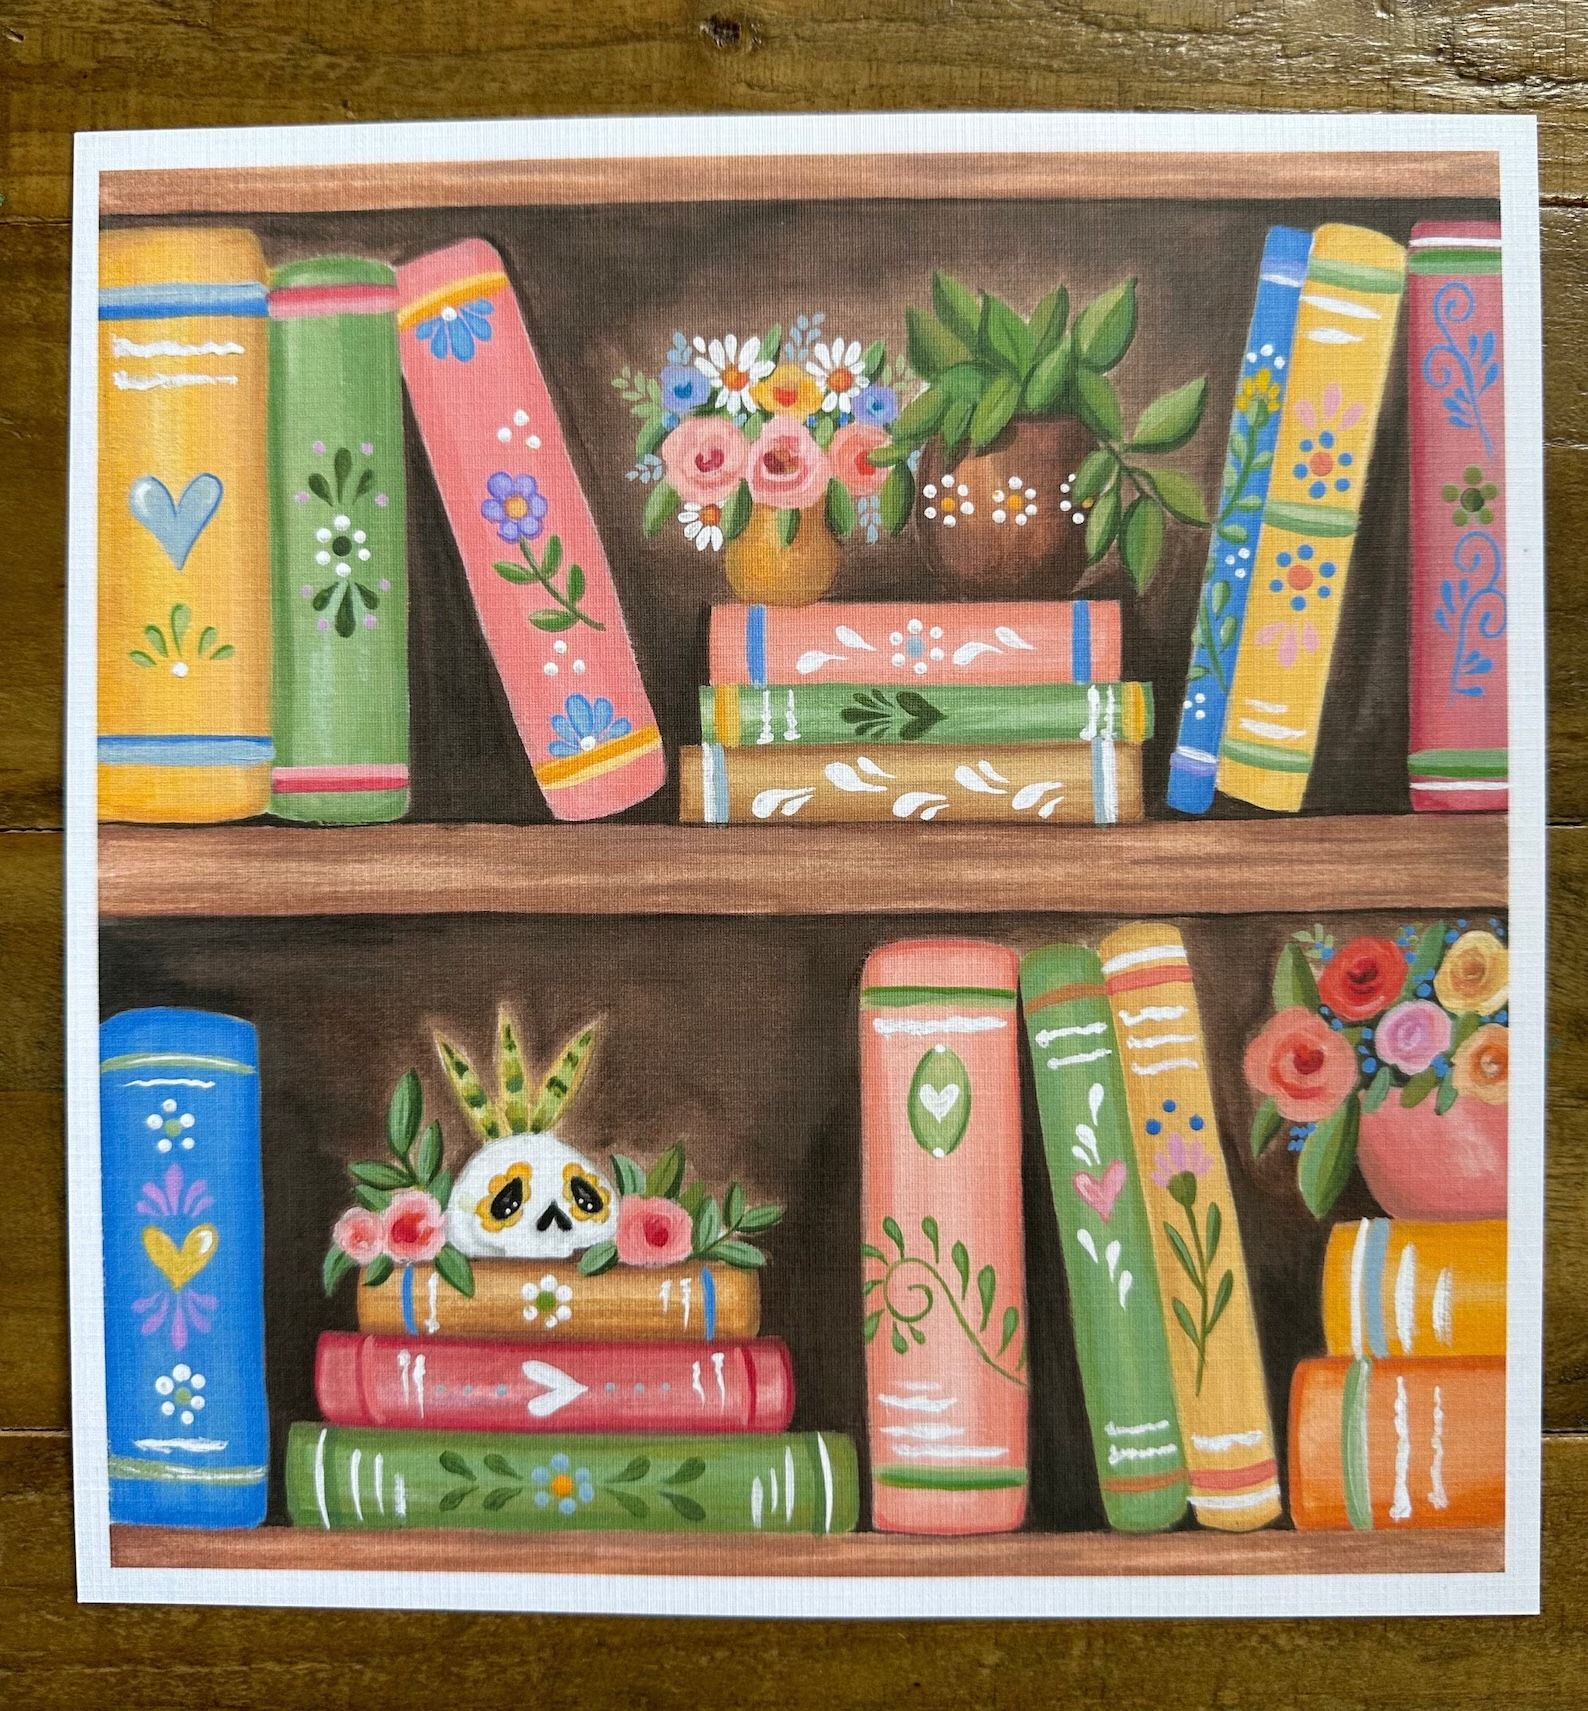 une impression montrant une étagère avec plusieurs livres colorés, des plantes succulentes et un crâne peint 